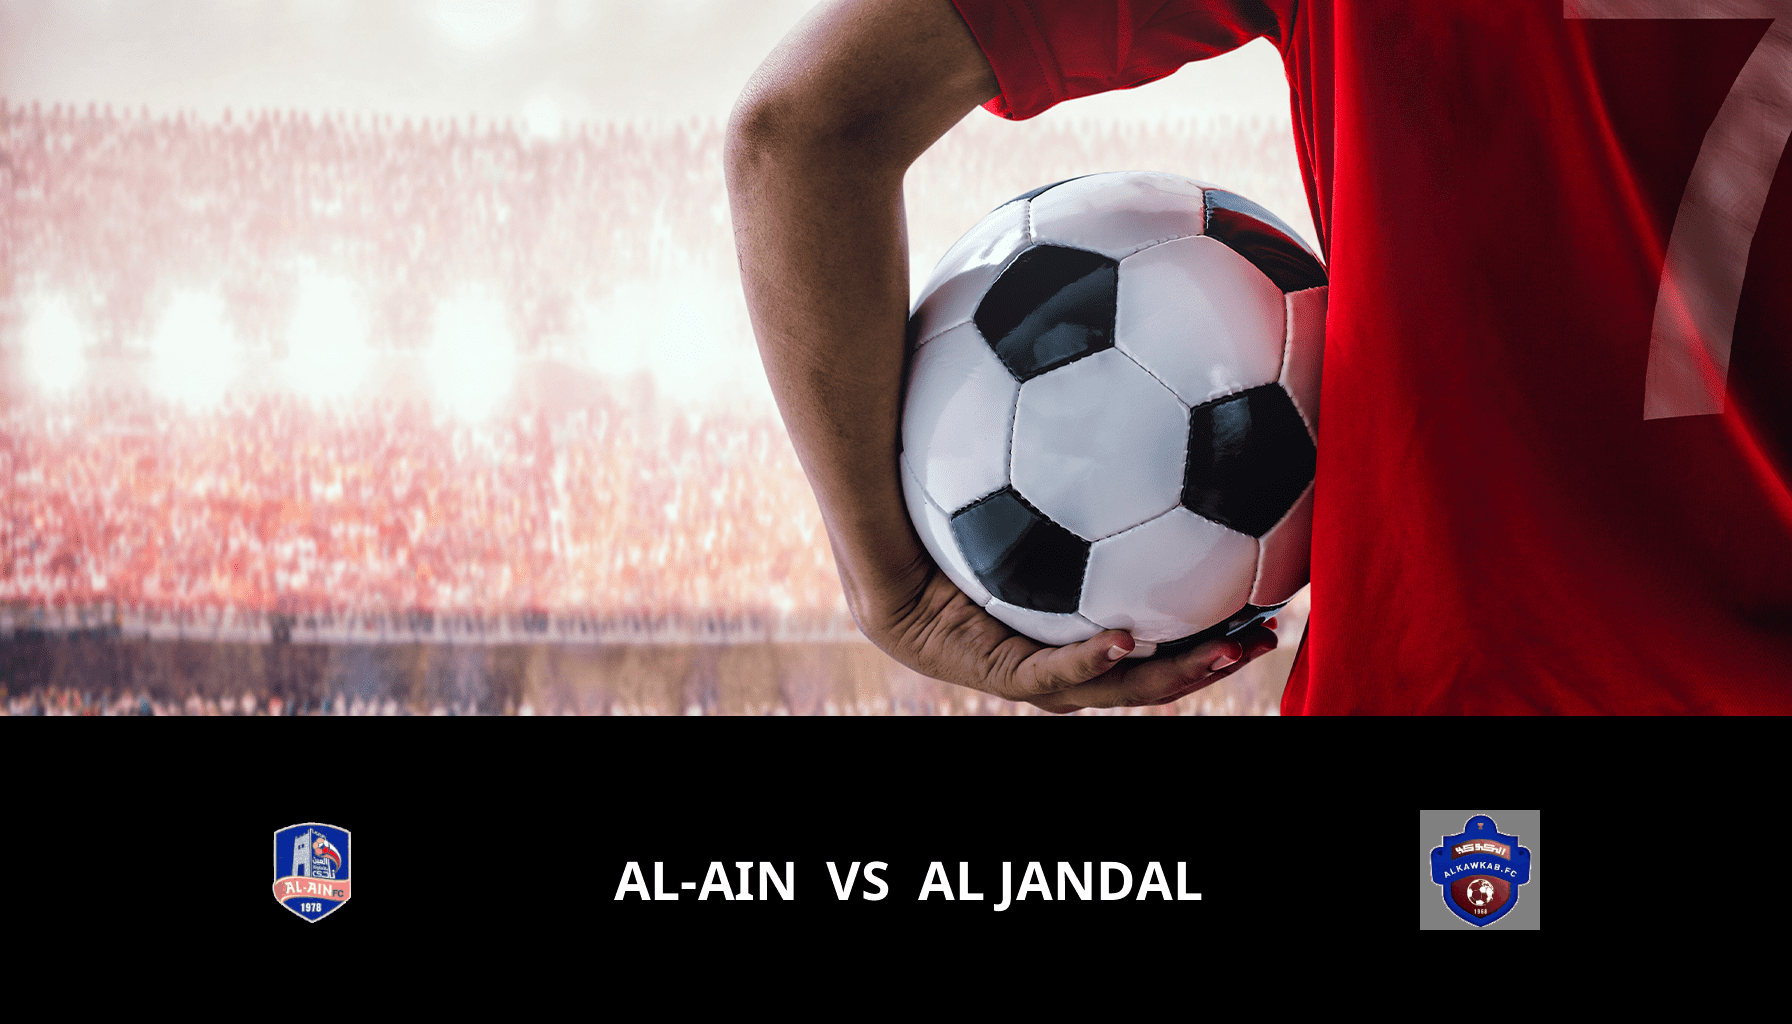 Previsione per Al-Ain VS Al Jandal il 28/03/2024 Analysis of the match